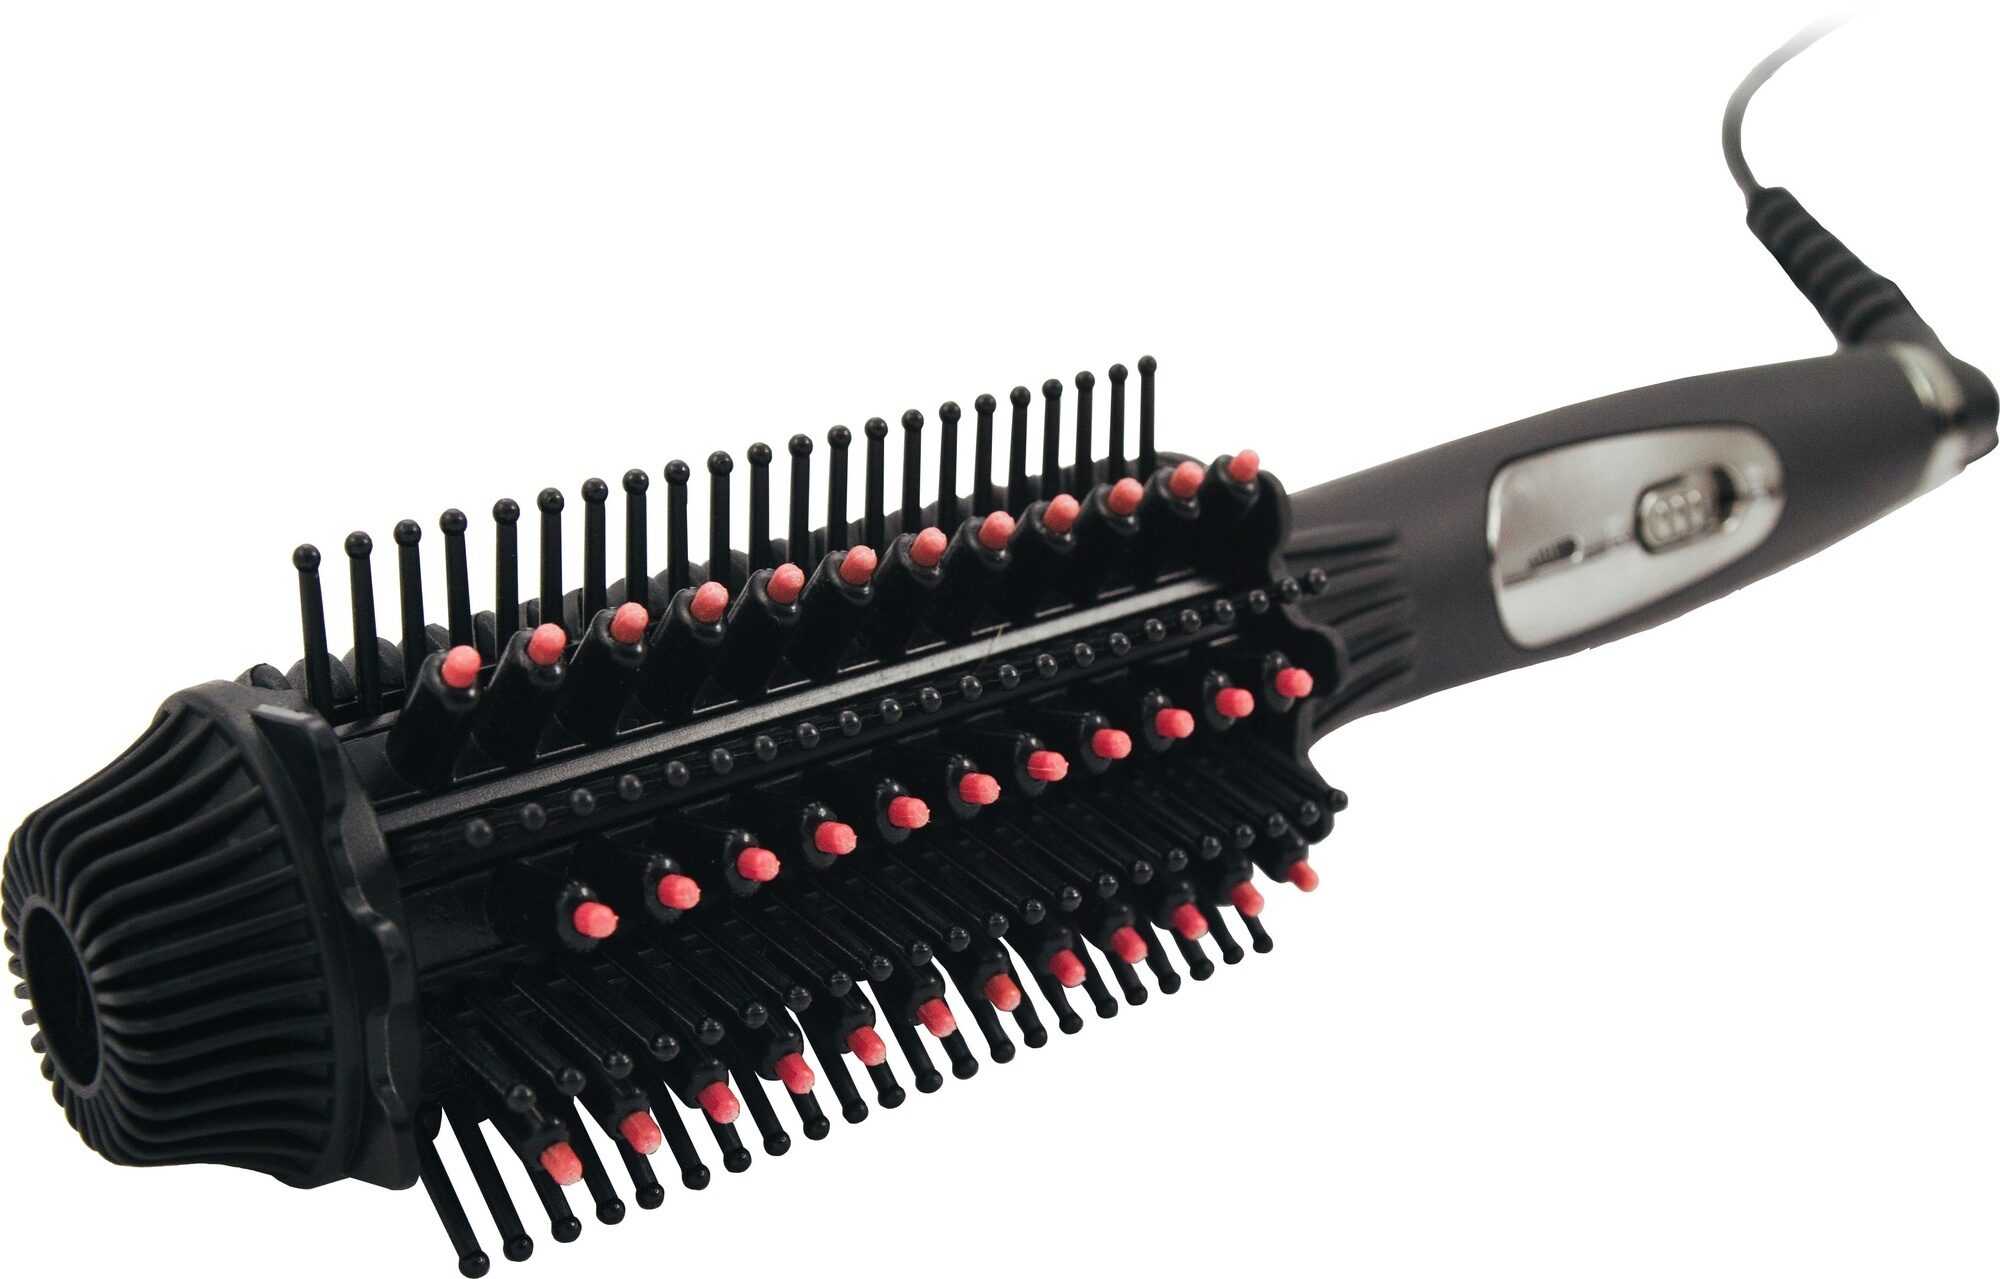 Электрическая расческа-выпрямитель fast hair straightener